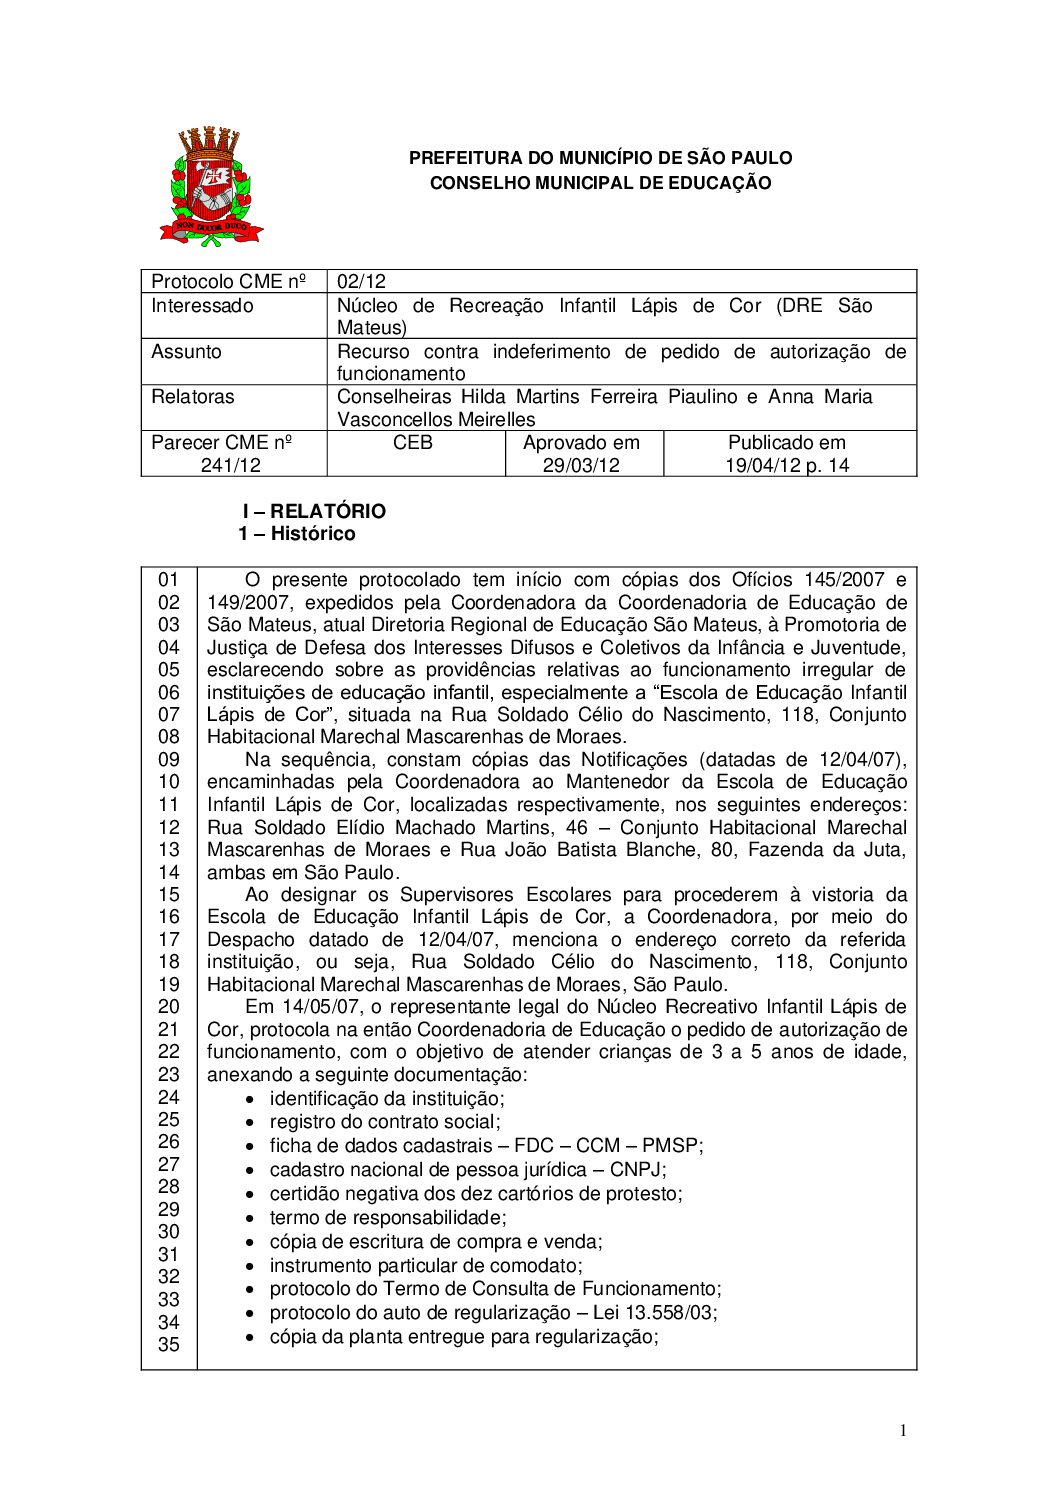 Parecer CME nº 241/2012 - Núcleo de Recreação Infantil Lápis de Cor (DRE São Mateus) - Recurso contra indeferimento de pedido de autorização de funcionamento 